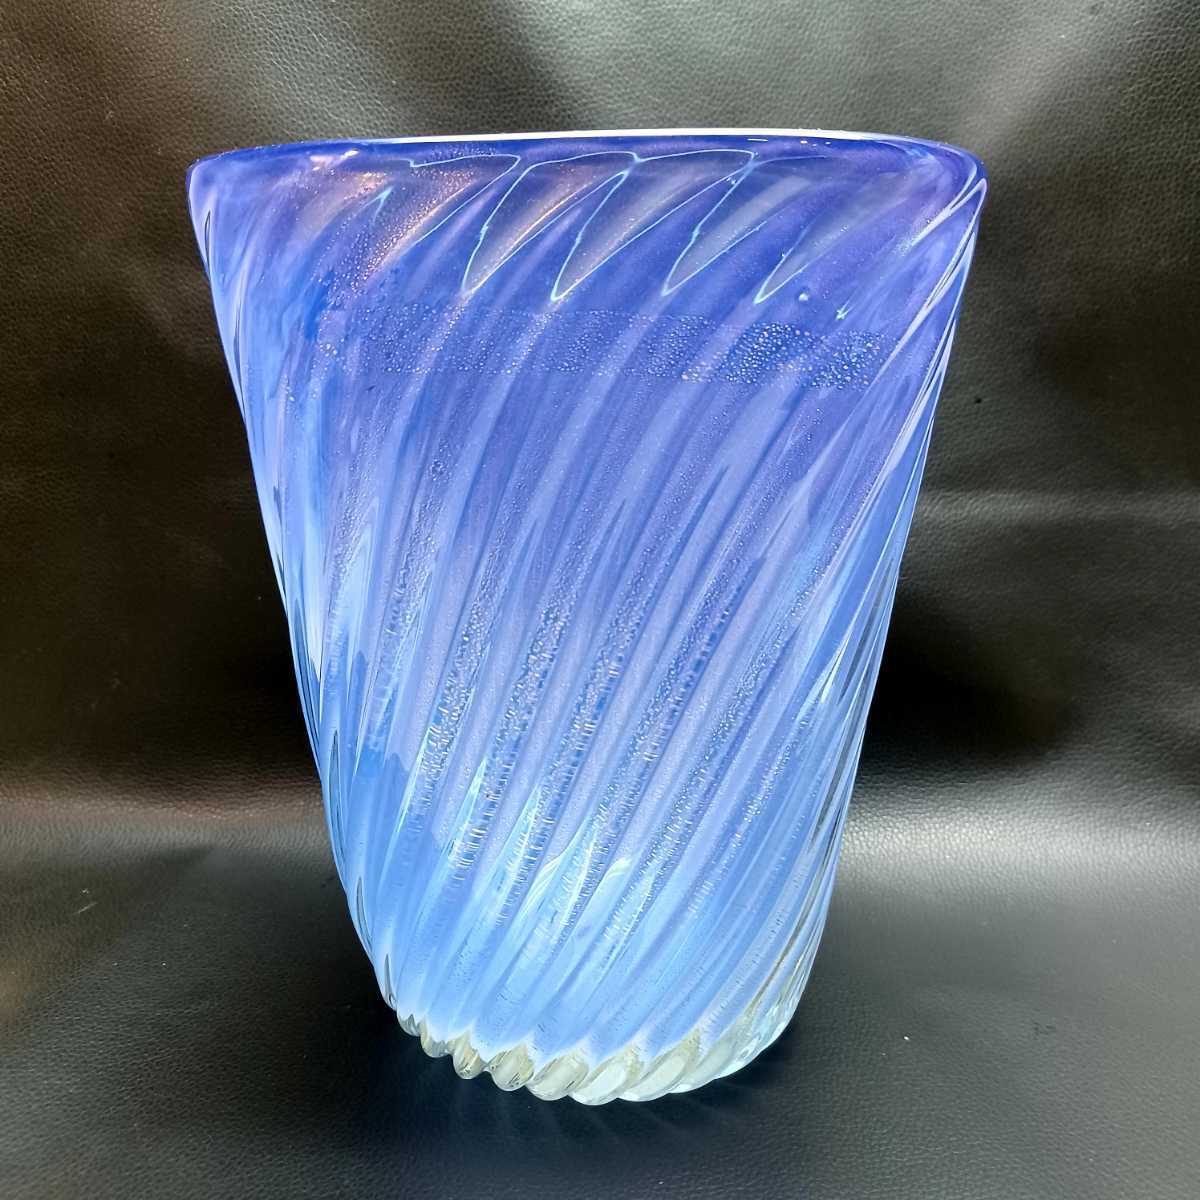 MURANOITALYムラノ 金彩 四角形 ブルー 花瓶ヴェネチアン ガラス